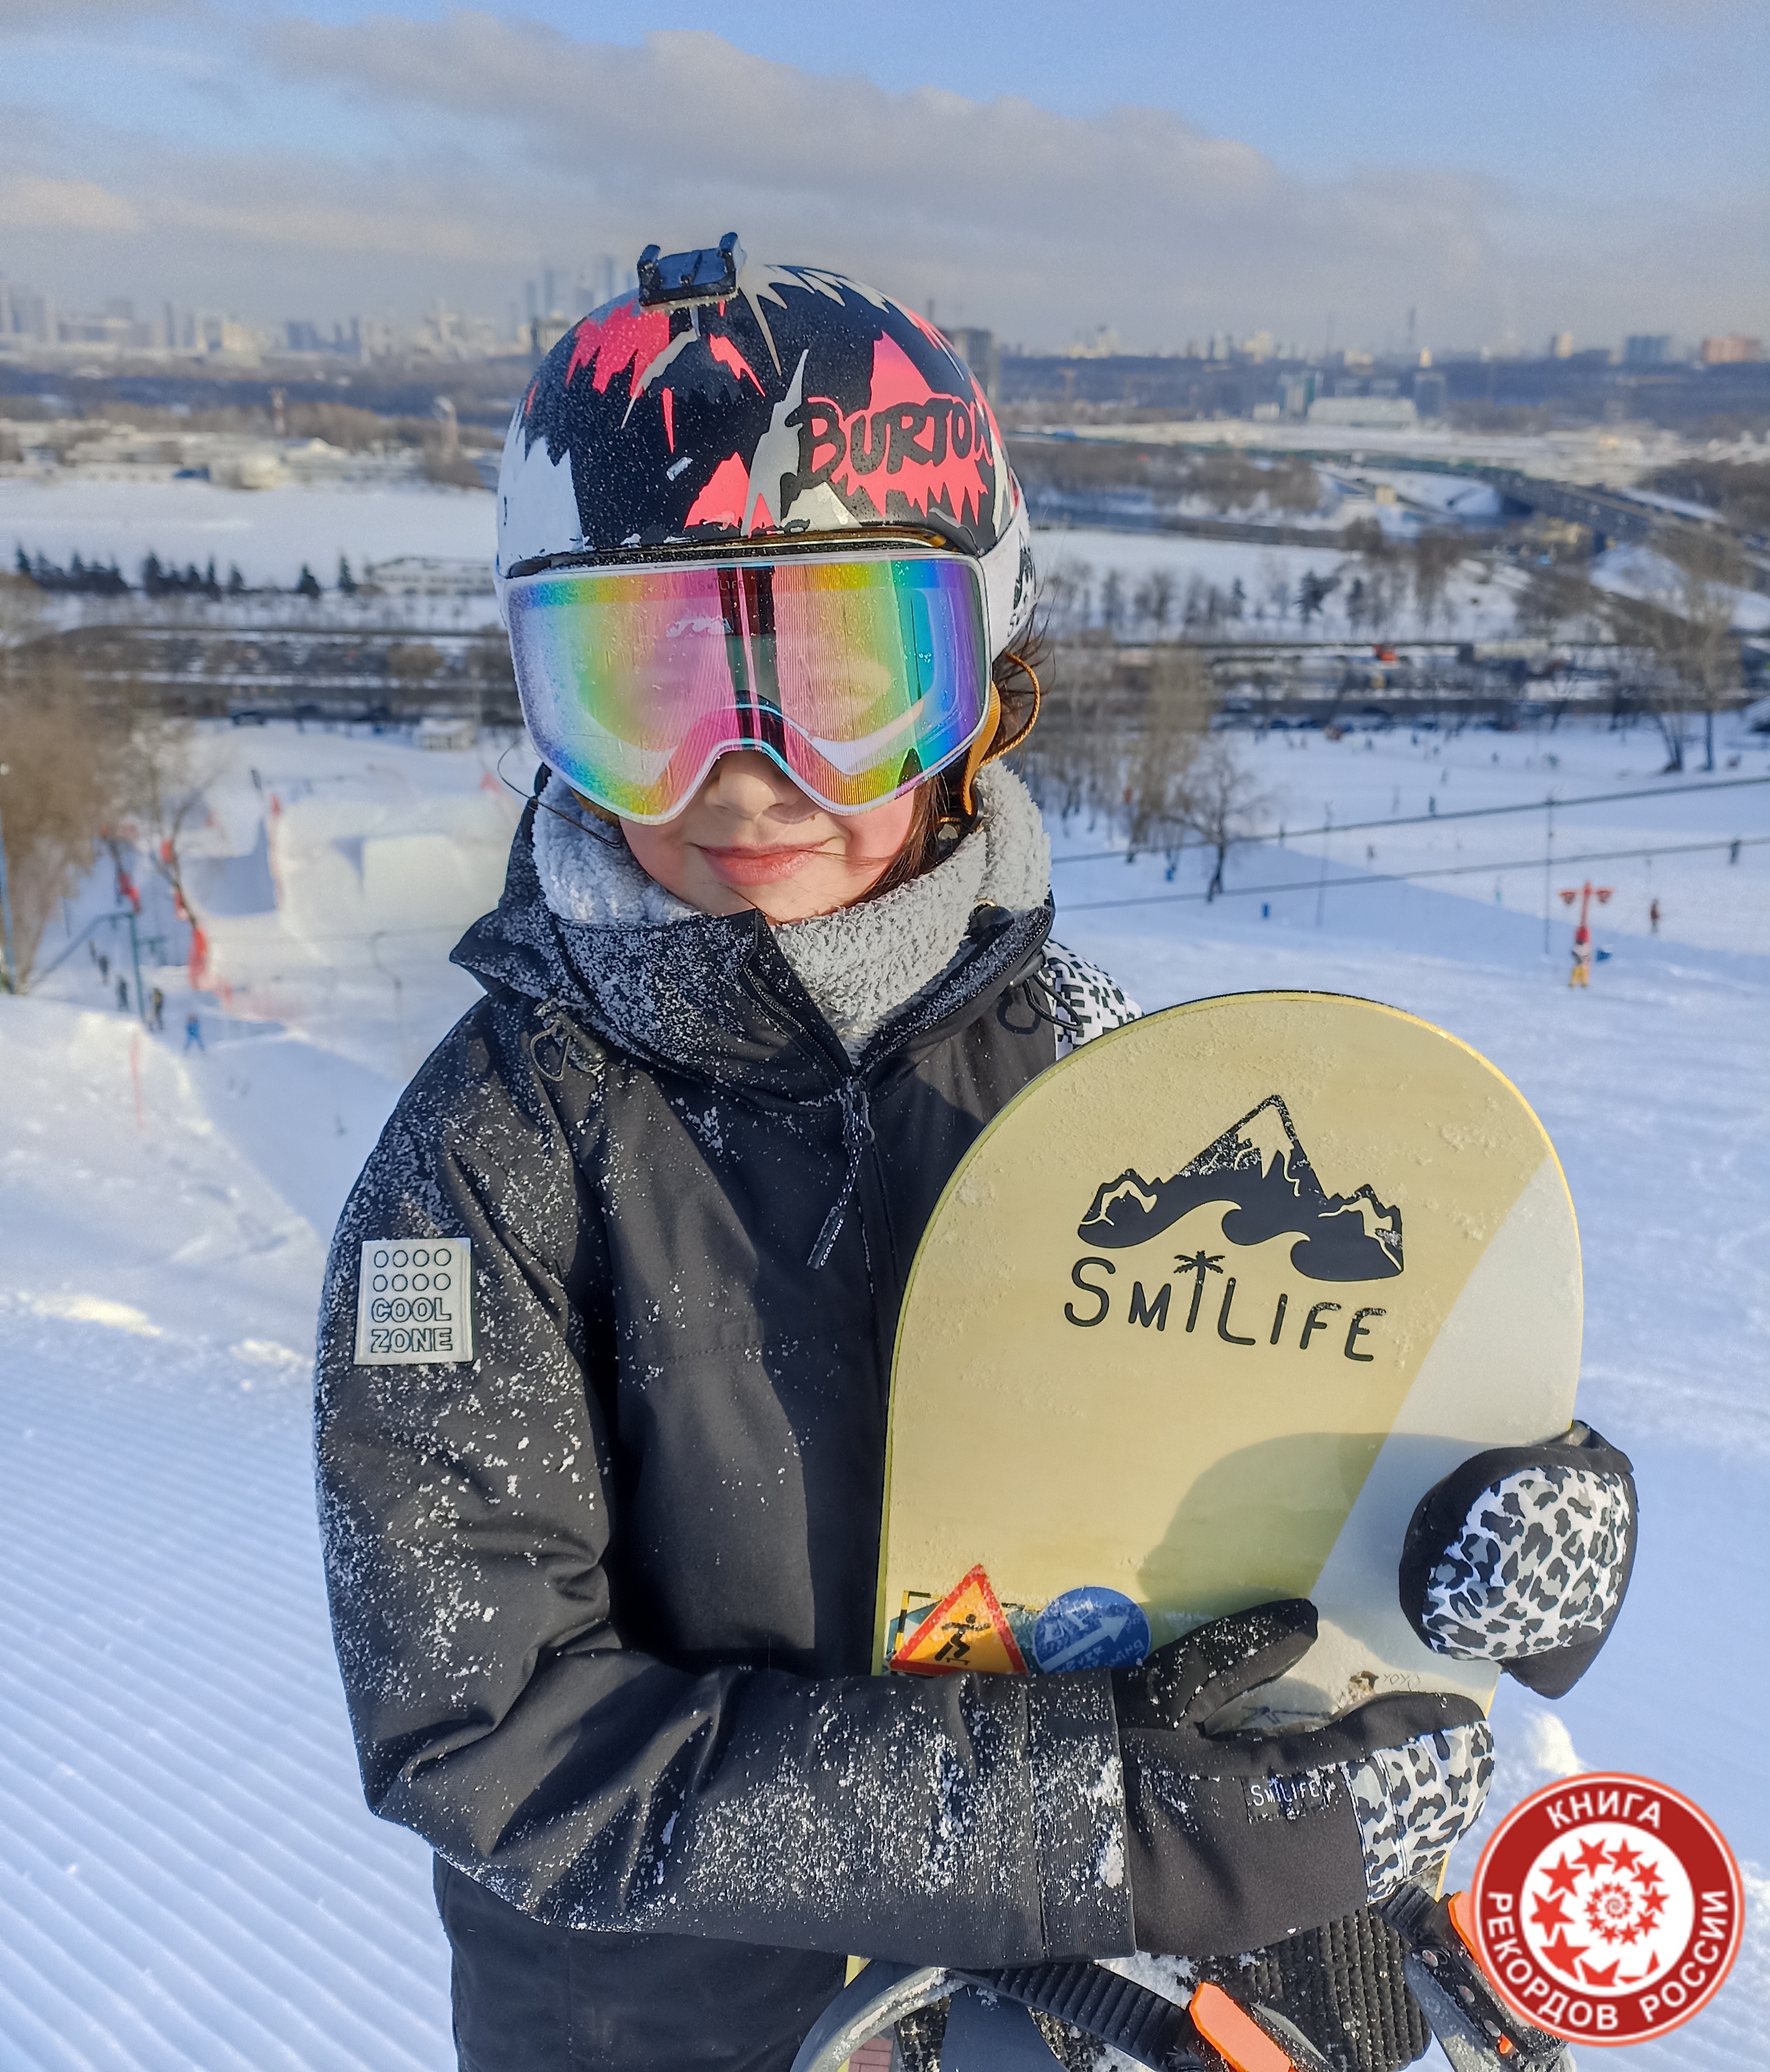 Трюк на сноуборде Backside 900° в наименьшем возрасте в России